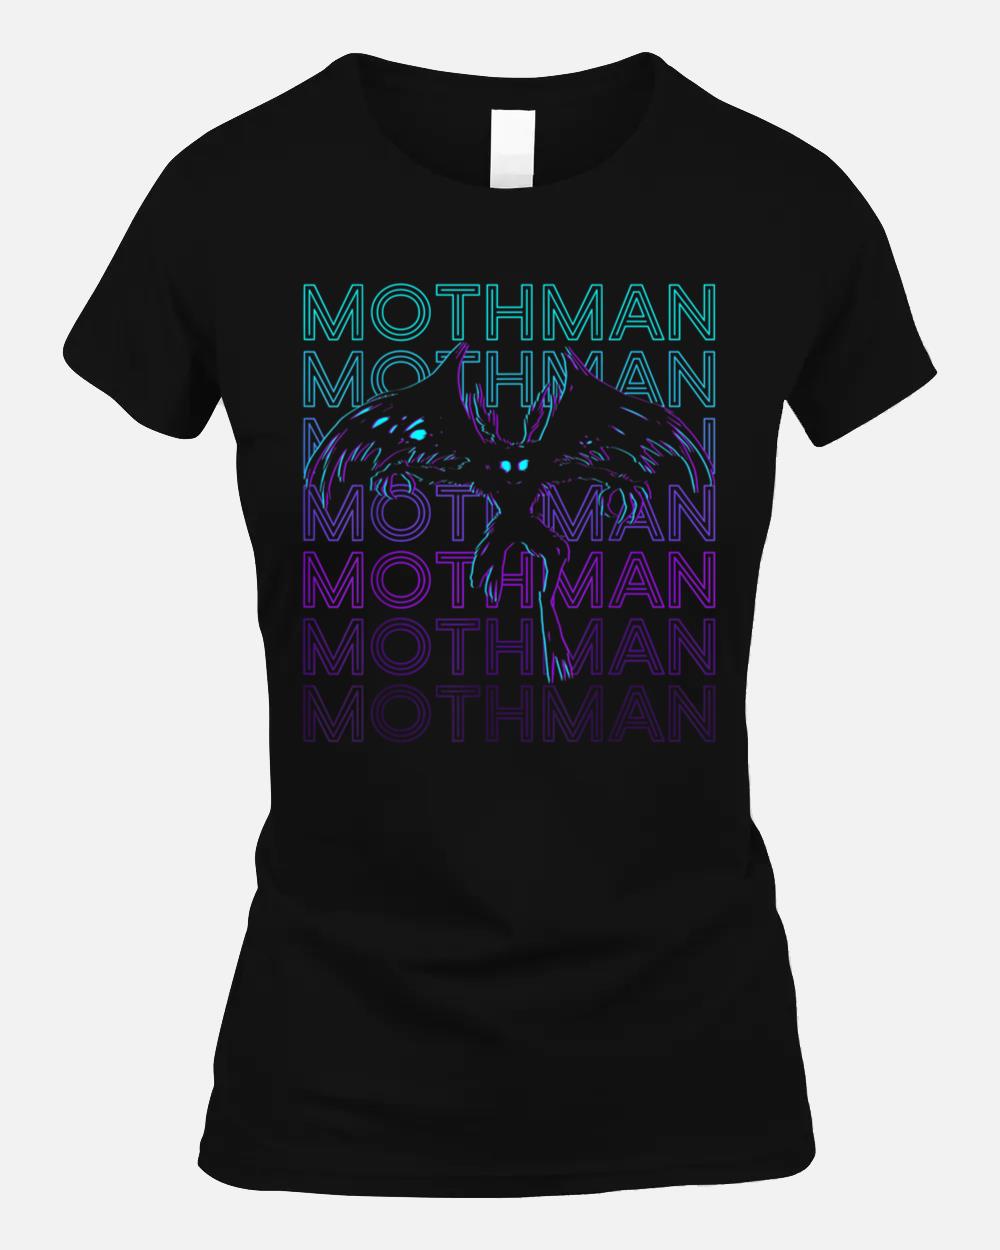 Mothman Cryptid Cryptozoology Retro Unisex T-Shirt